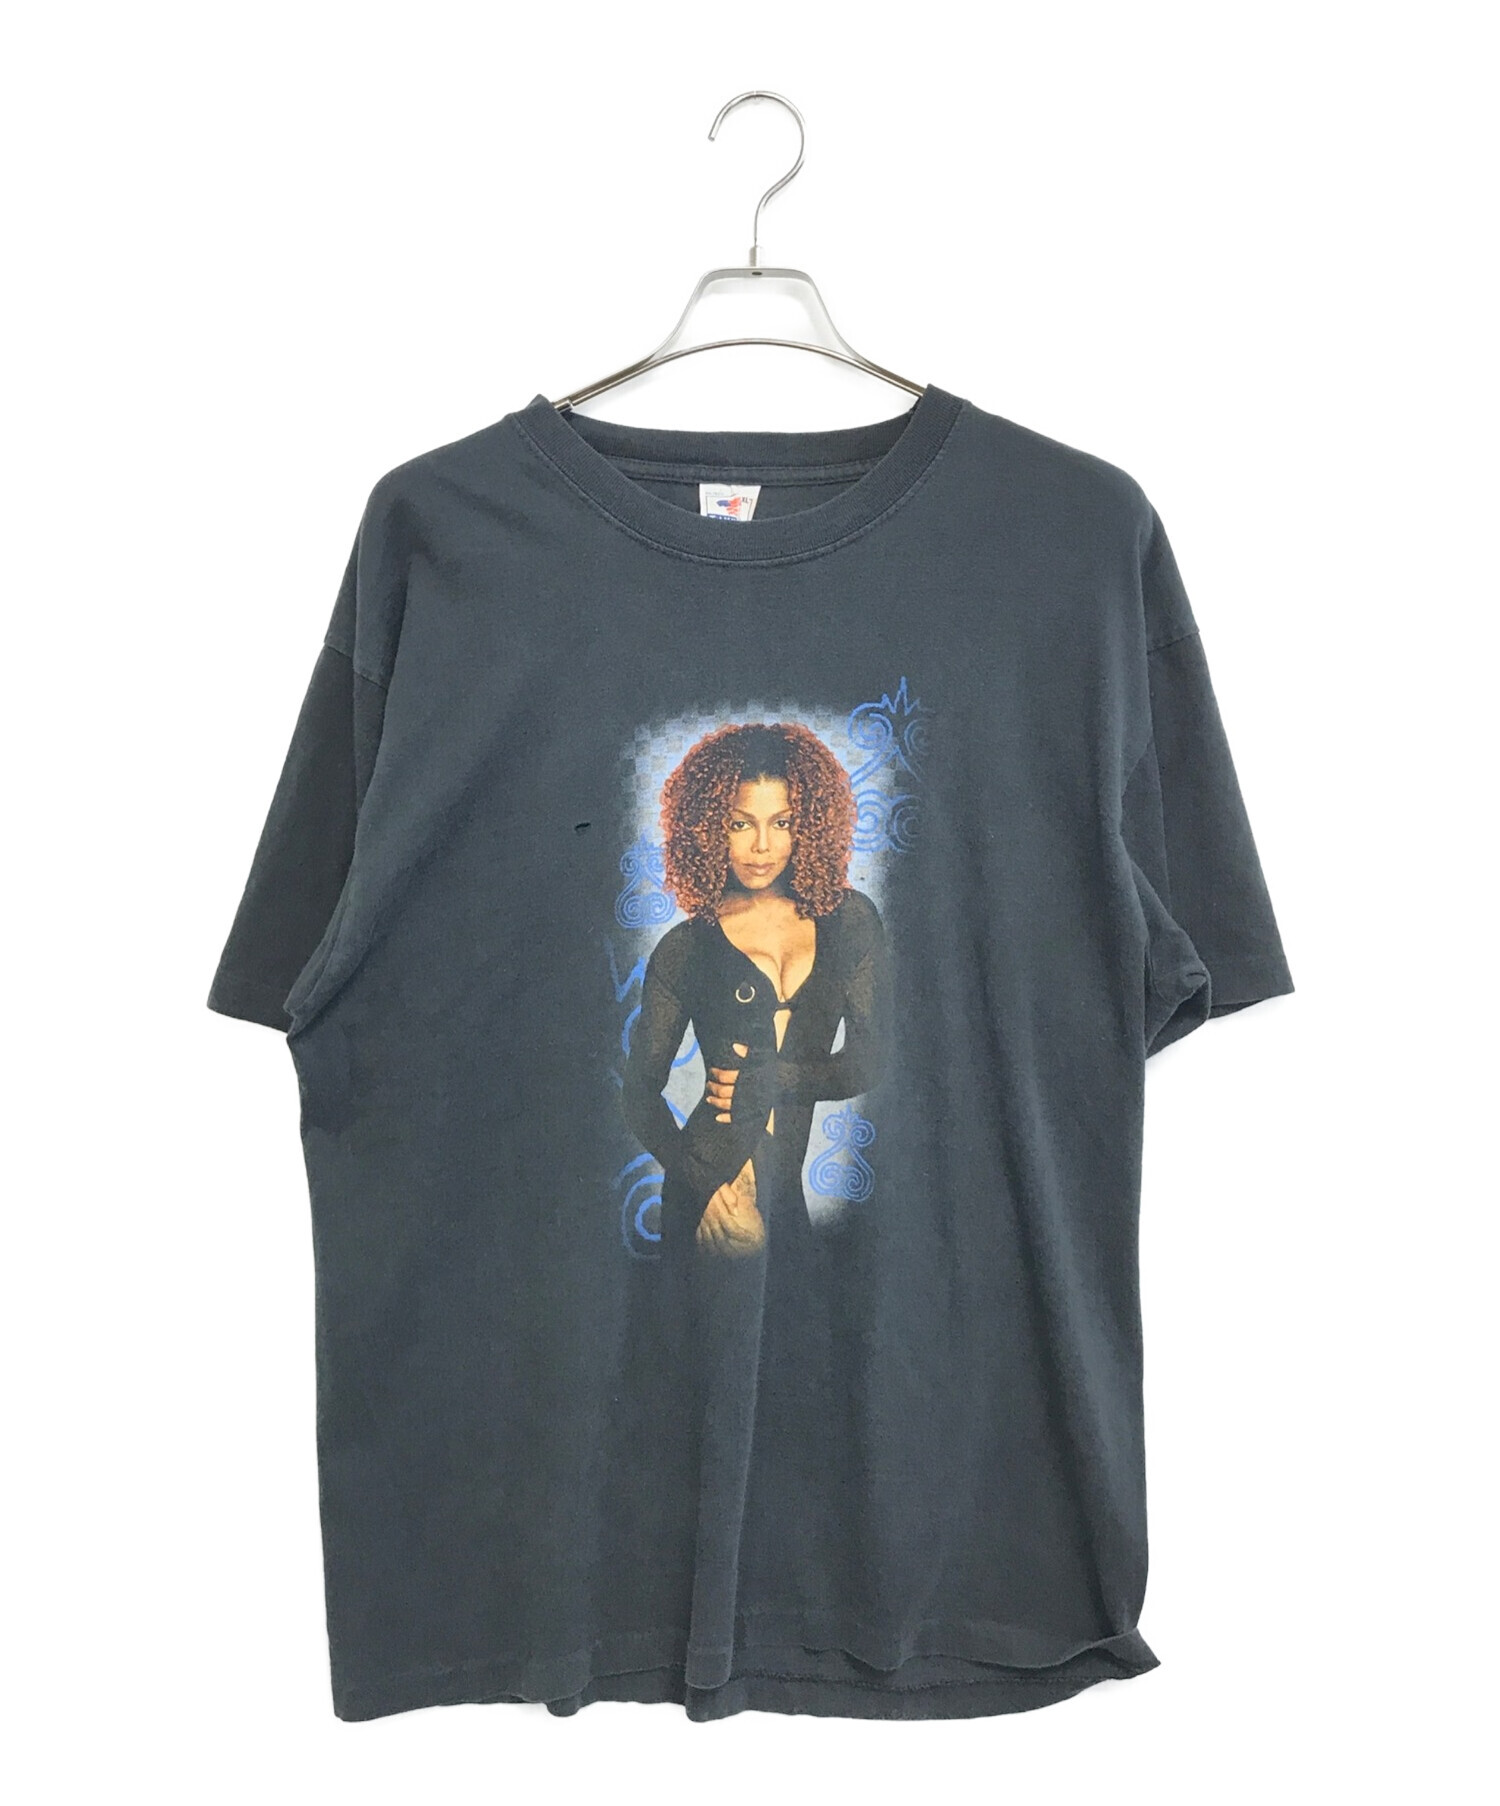 アーティストTシャツ (アーティストTシャツ) JANET JACKSON(ジャネットジャクソン) 90'sアーティストTシャツ ブラック サイズ:XL